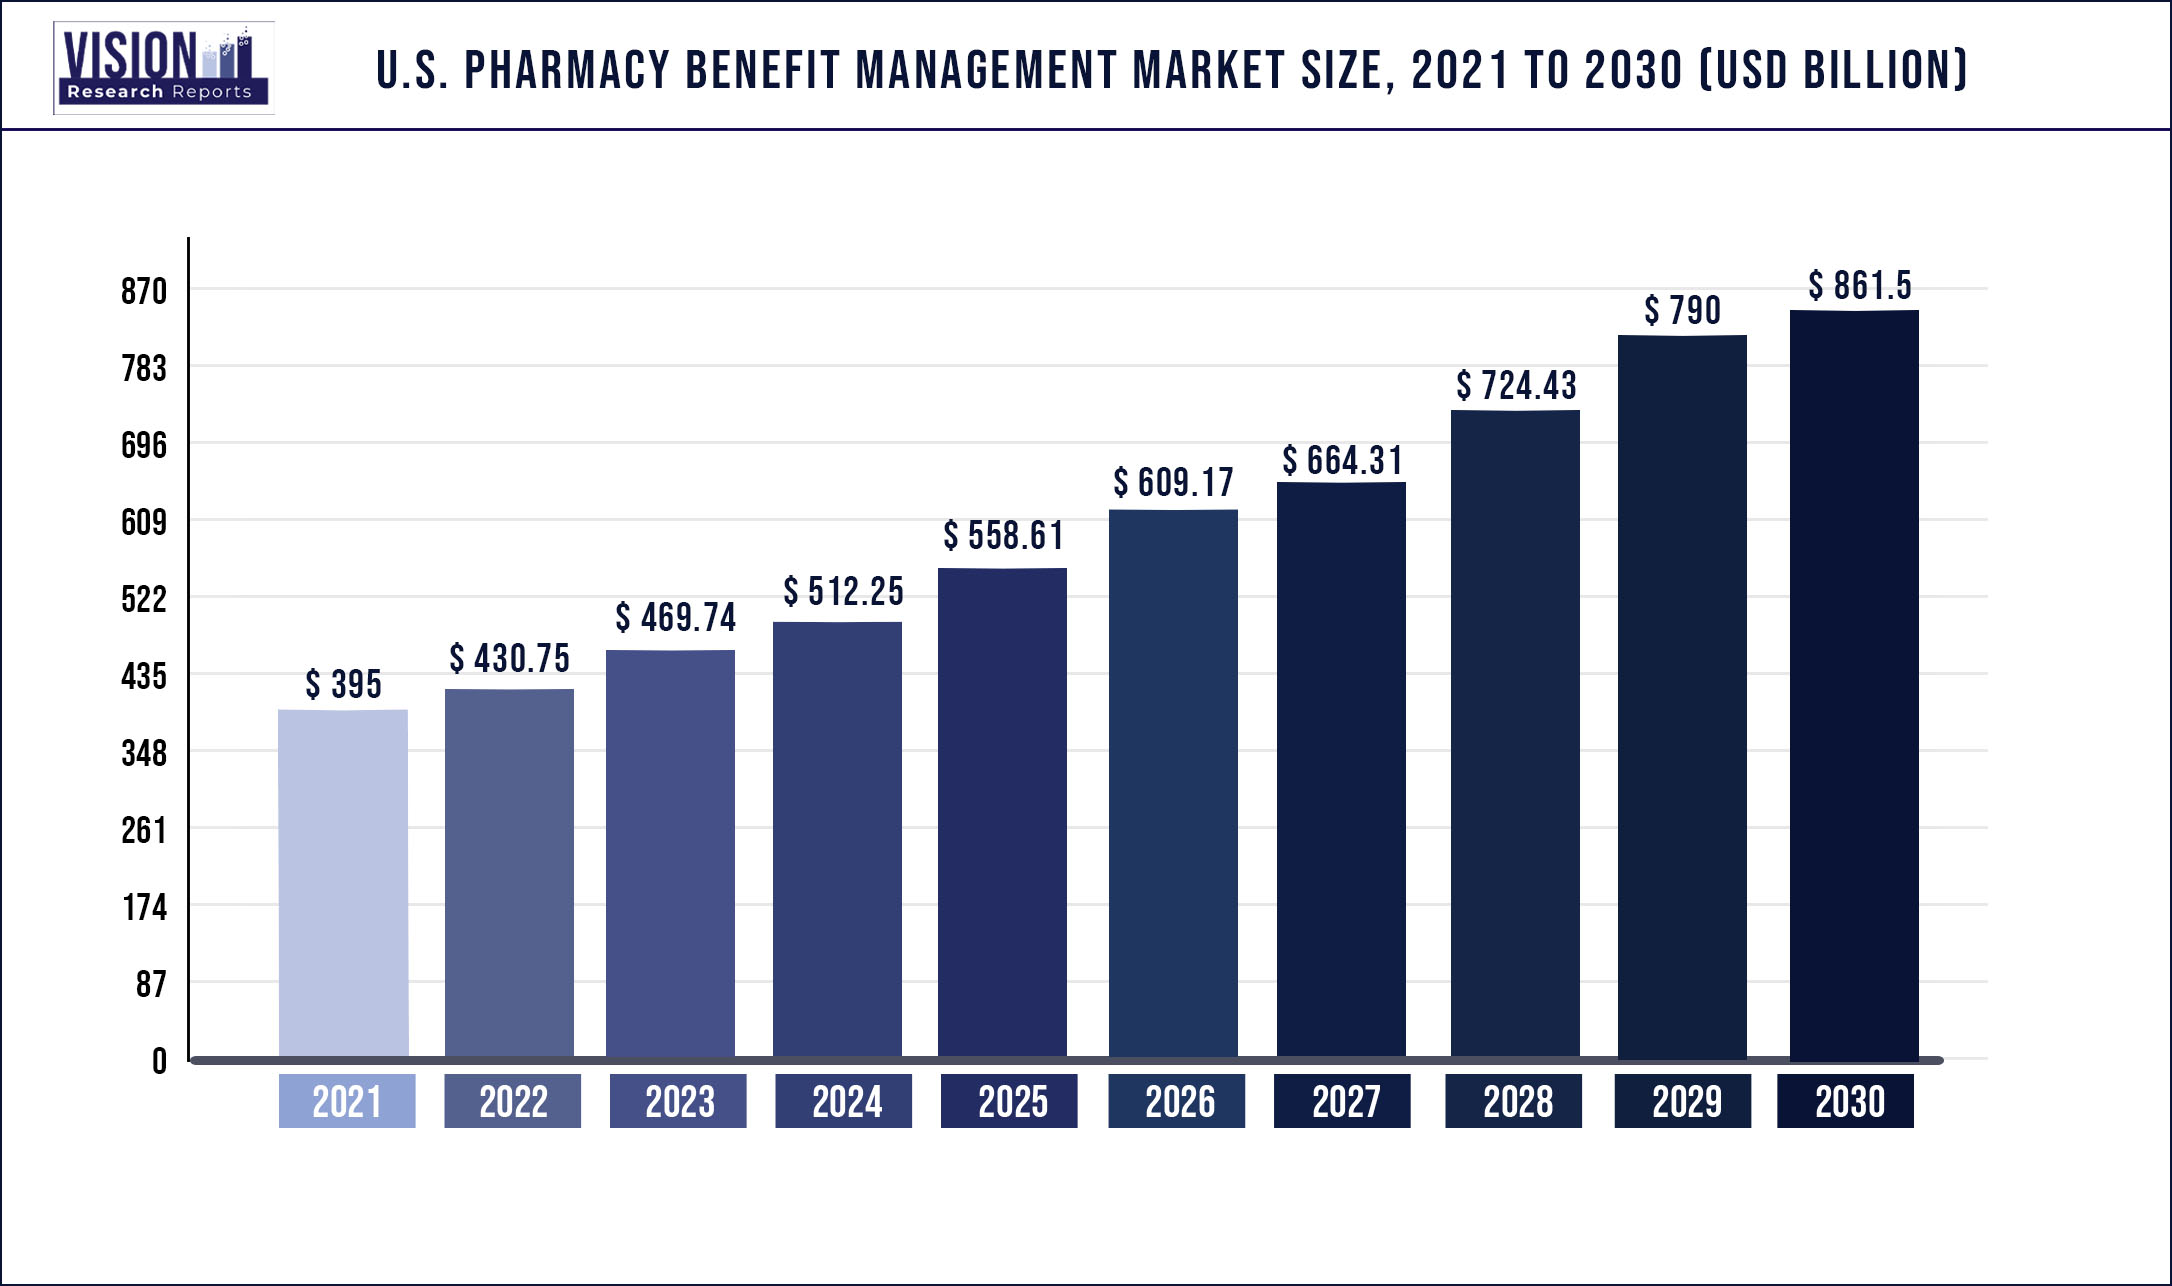 U.S. Pharmacy Benefit Management Market Size 2021 to 2030